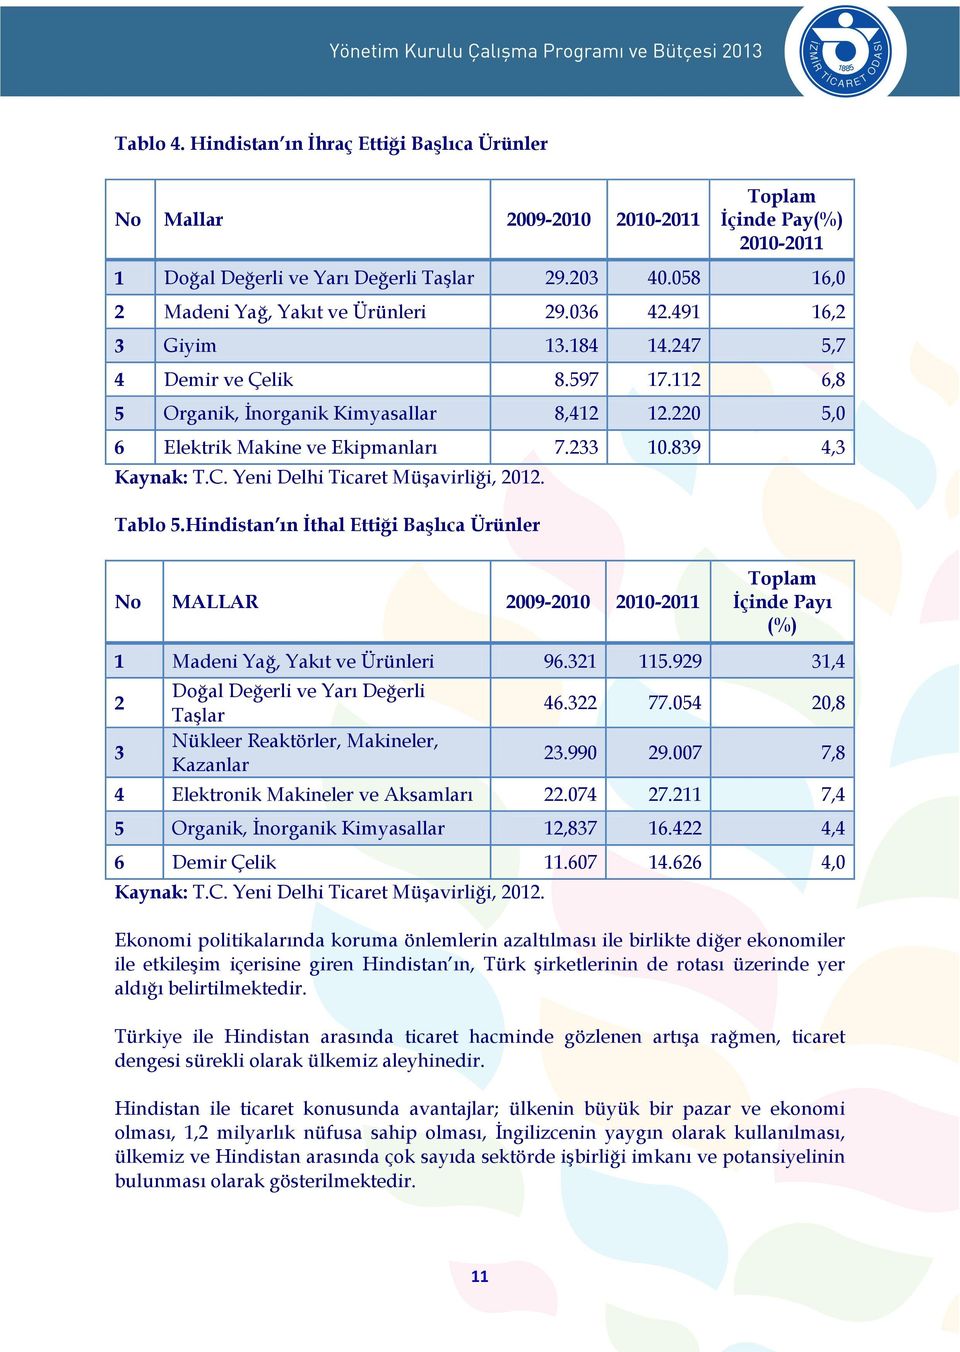 220 5,0 6 Elektrik Makine ve Ekipmanları 7.233 10.839 4,3 Kaynak: T.C. Yeni Delhi Ticaret Müşavirliği, 2012. Tablo 5.